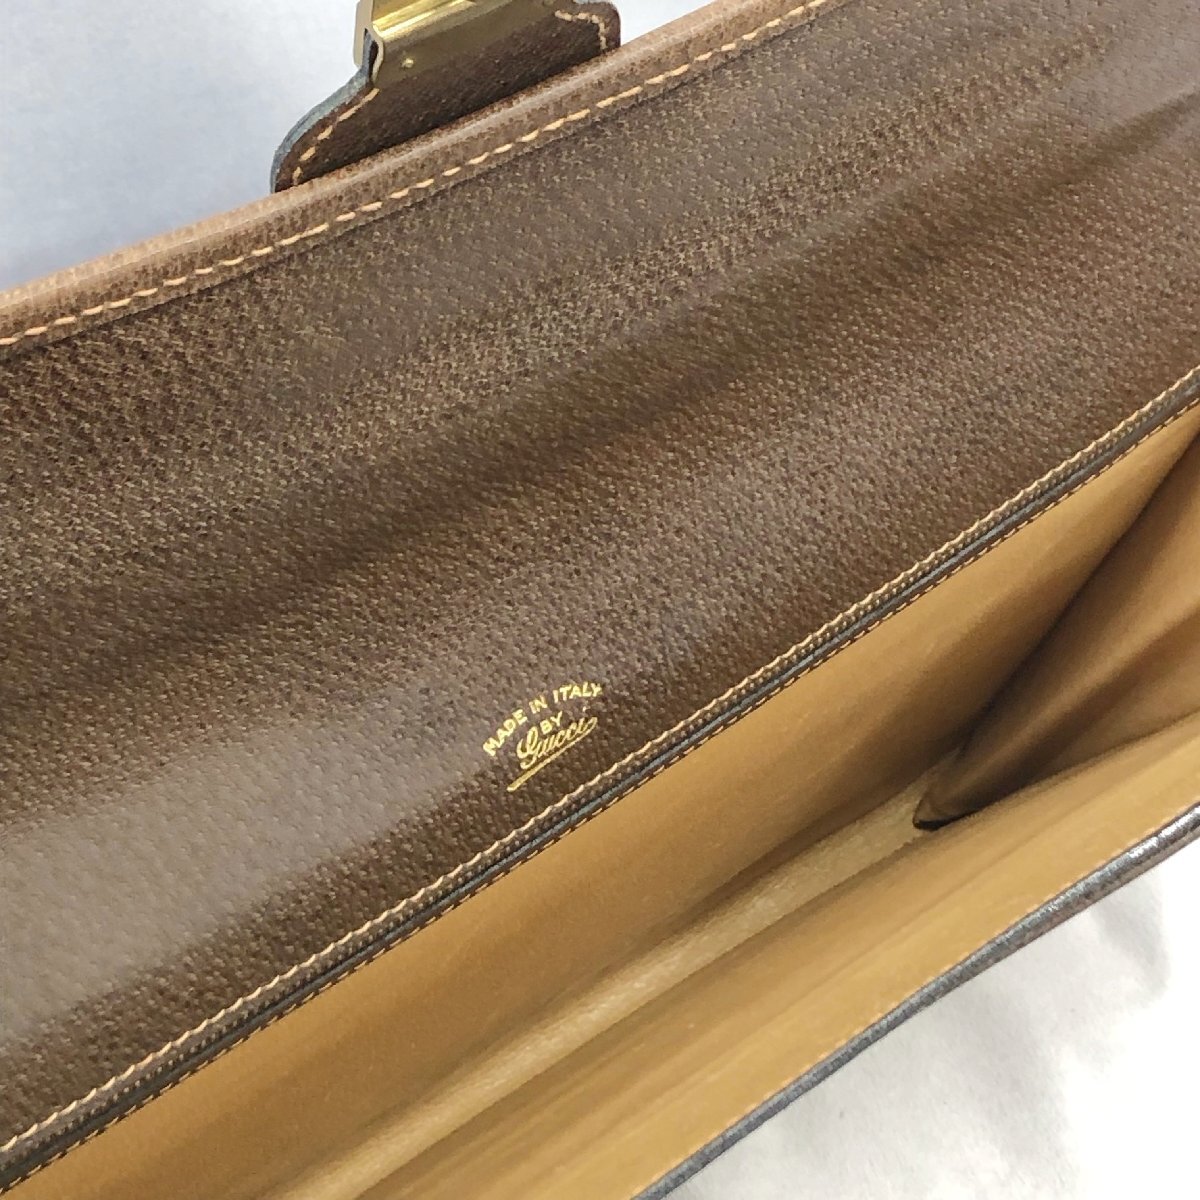 GUCCI グッチ オールドグッチ GG柄 クラッチバッグ セカンド バッグ 鞄 鍵 付き PVC レザー ブラウン系 ヴィンテージ ブランド 鞄の画像4